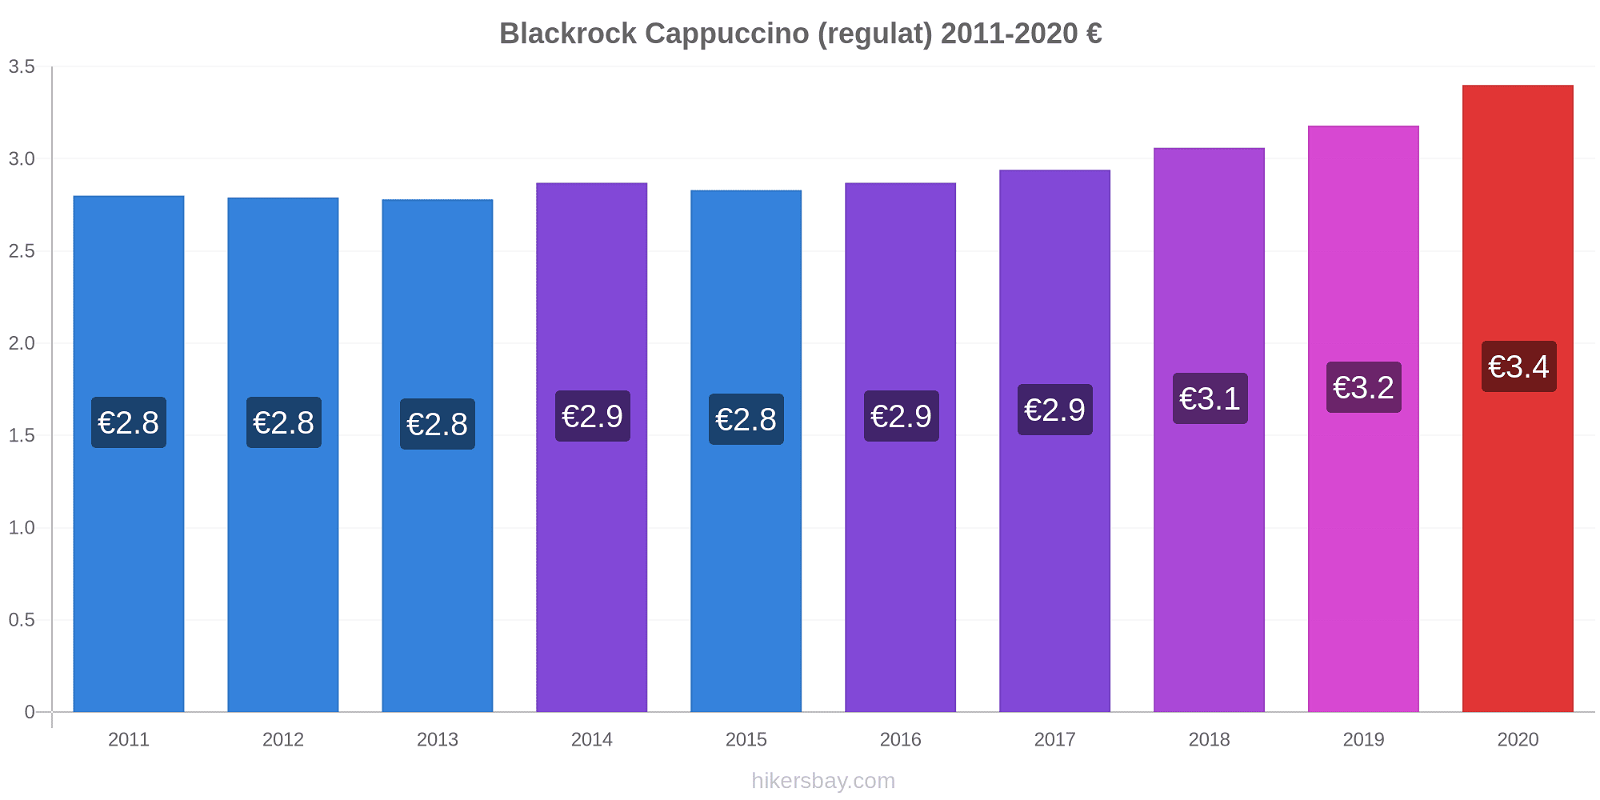 Blackrock modificări de preț Cappuccino (regulat) hikersbay.com